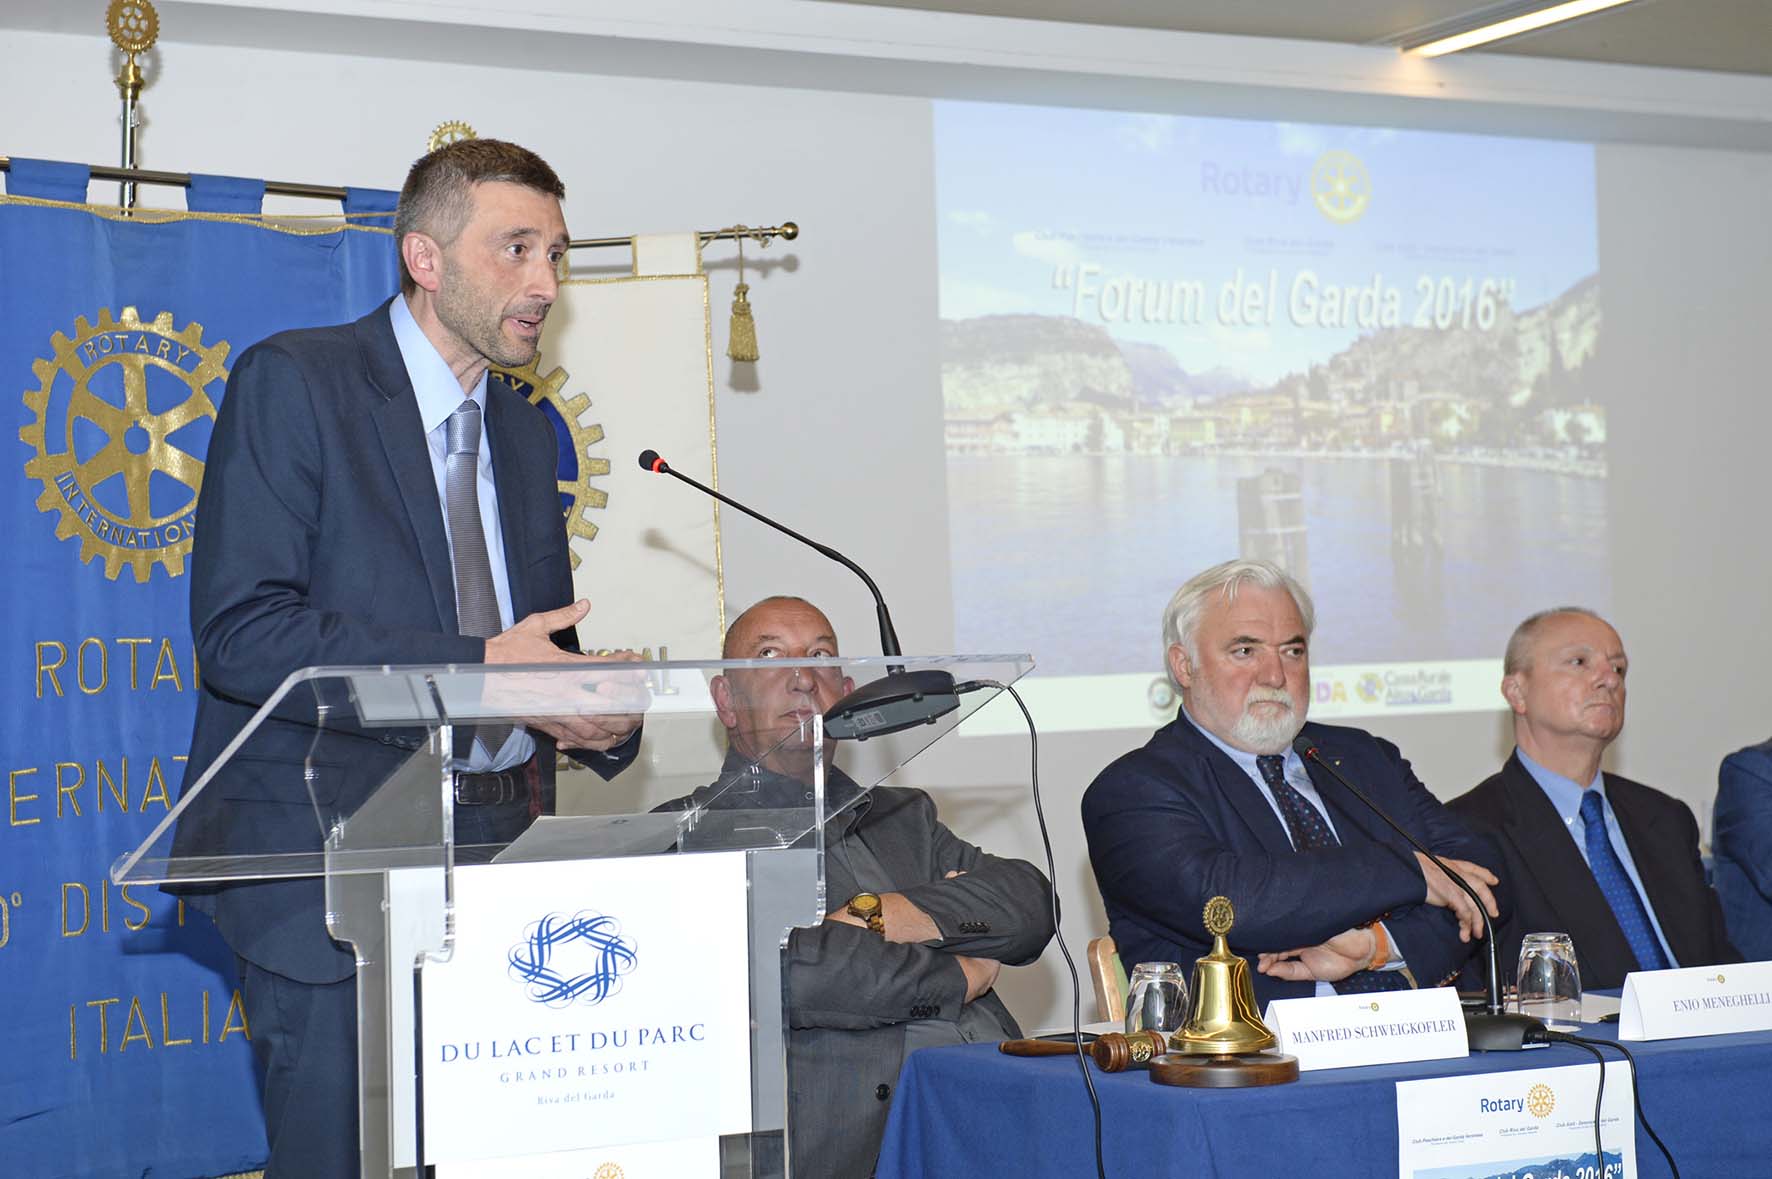 Forum del Garda 2016 tavolo assessore michele dallapiccola podio